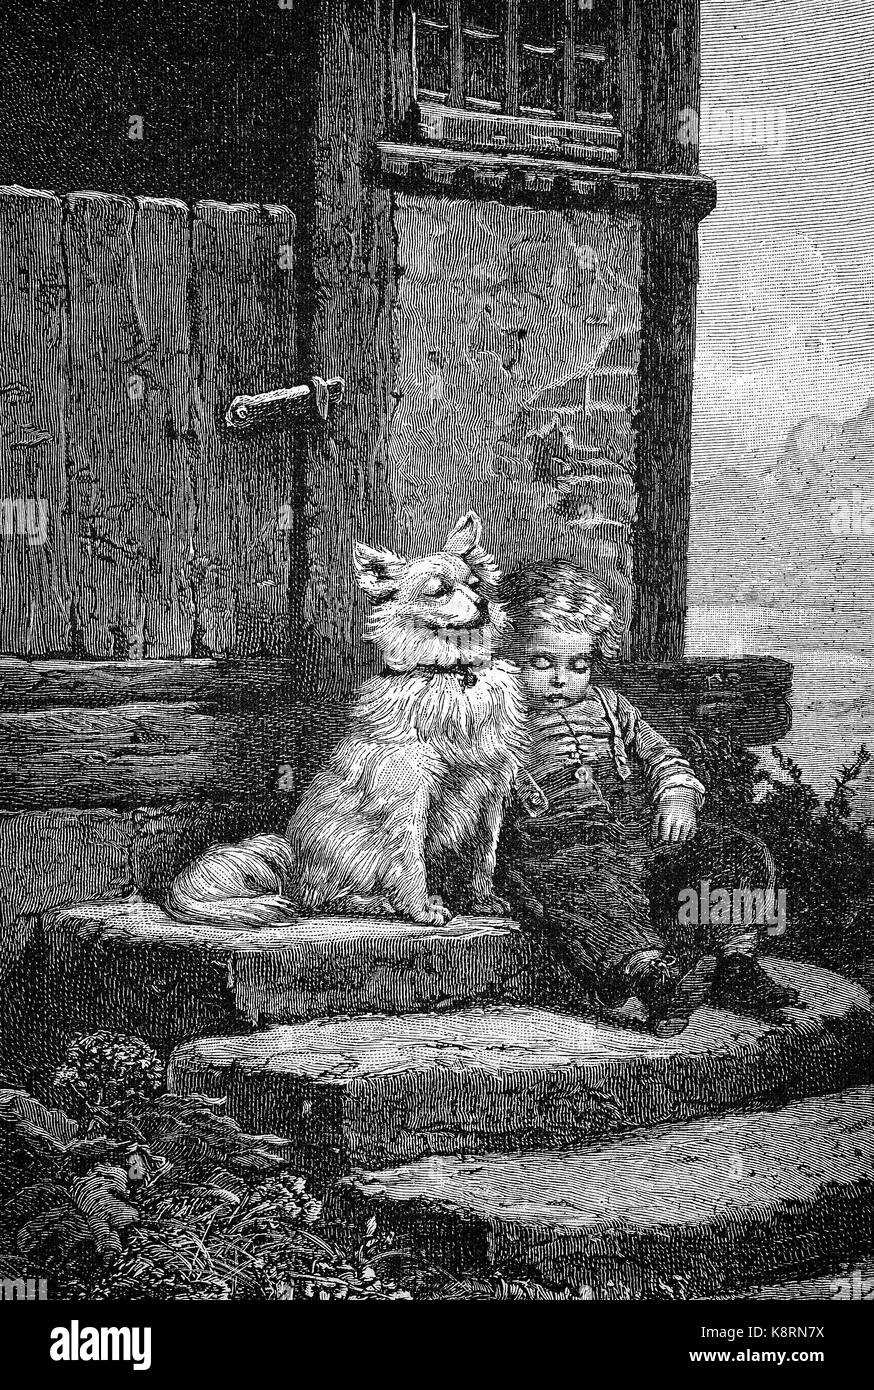 The Guardian il cane sta custodendo il ragazzino che è caduto addormentato sulle scale, Der Wächter, Hund bewacht den kleinen Jungen der auf der Treppe eingeschlafen ist, digitale Riproduzione migliorata di una xilografia, pubblicata nel XIX secolo Foto Stock